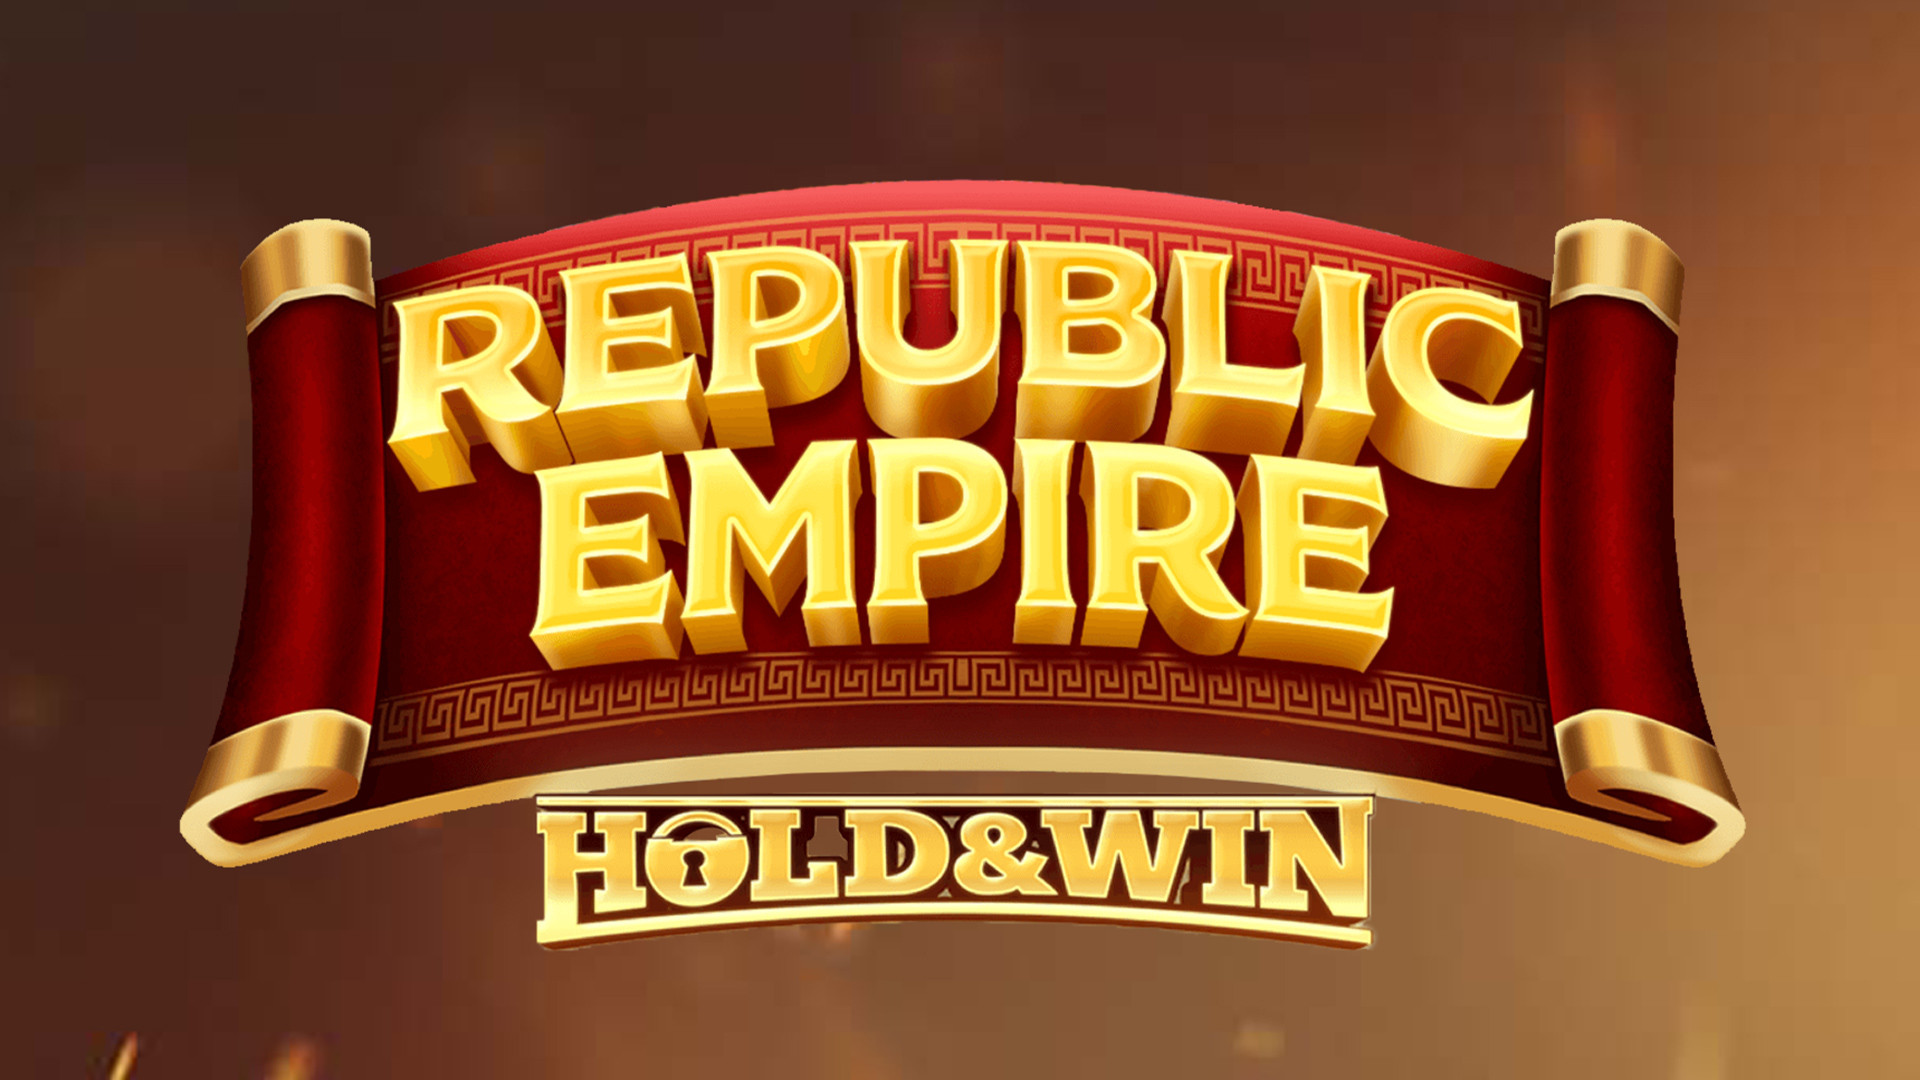 Republic Empire: Hold & Win